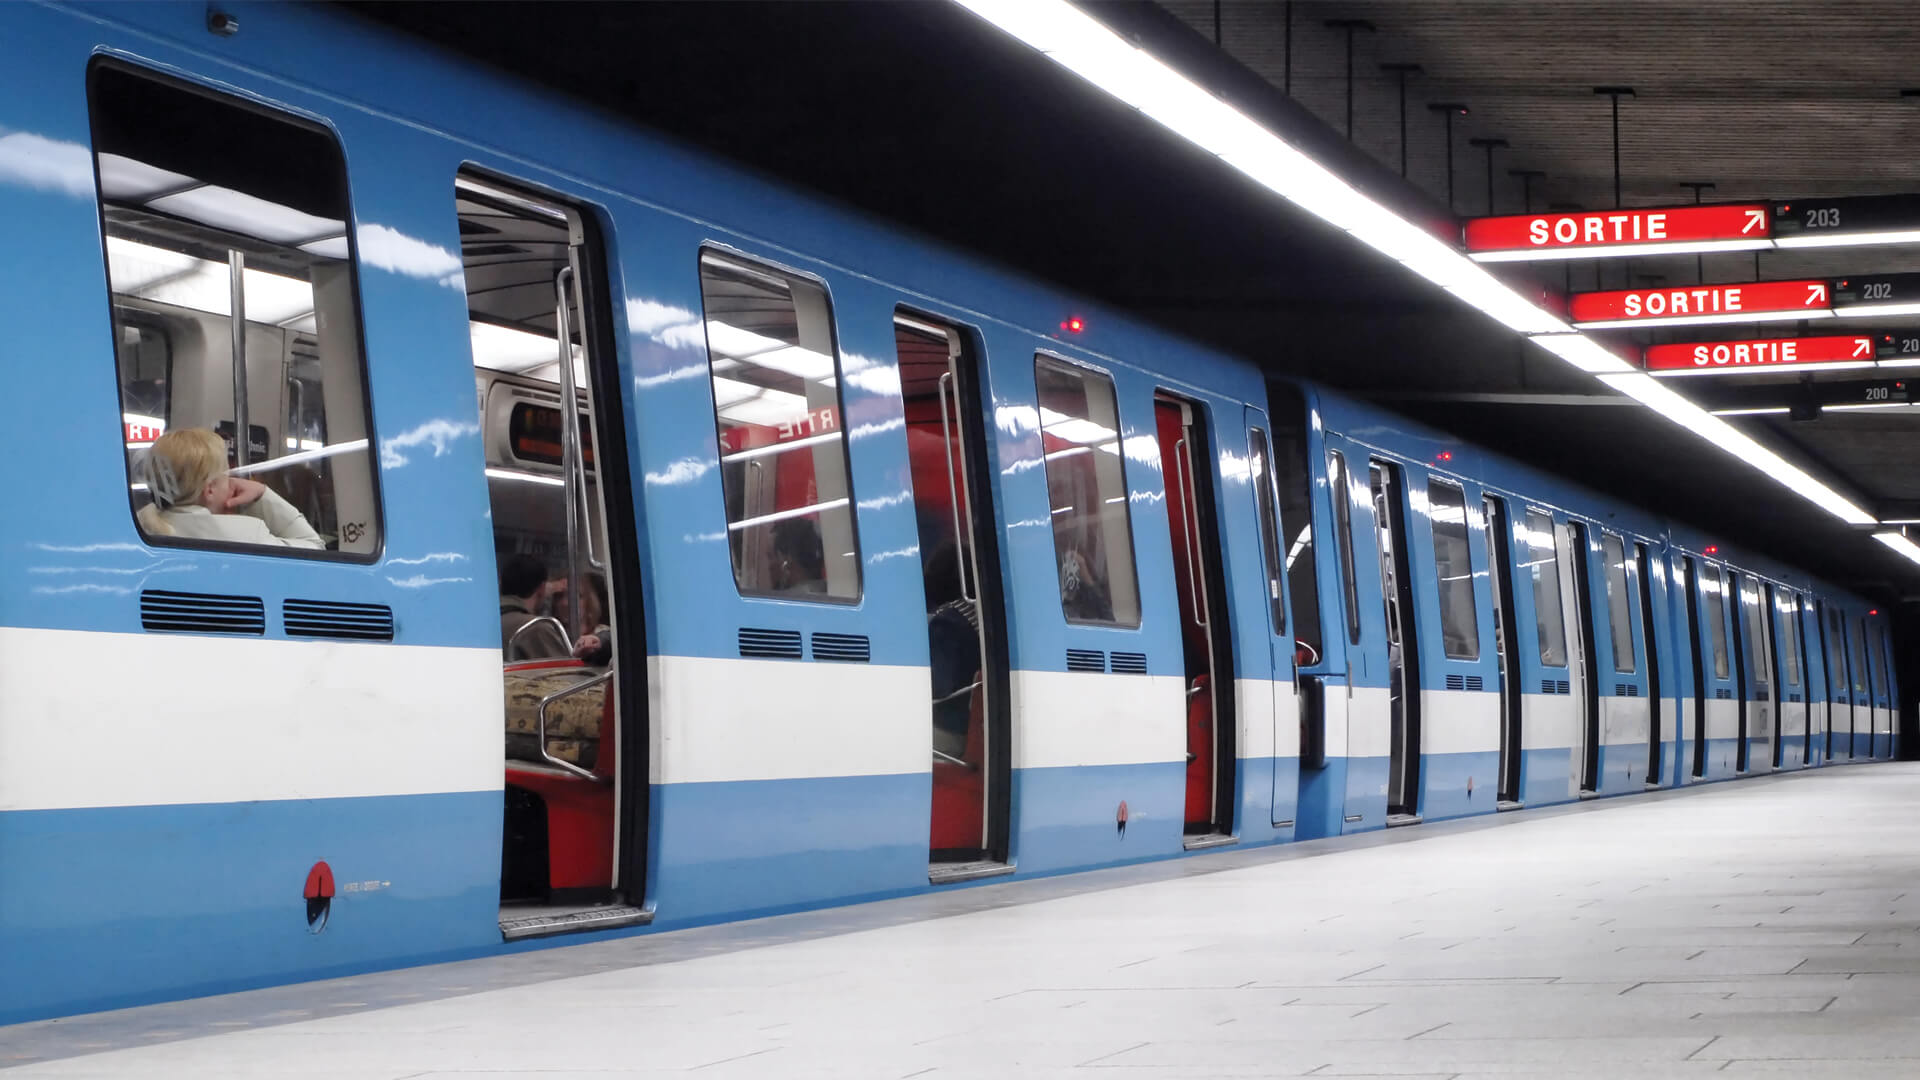 Un train bleu et blanc est à l'arrêt dans une station souterraine éclairée, avec le mot "SORTIE" indiquant les sorties.